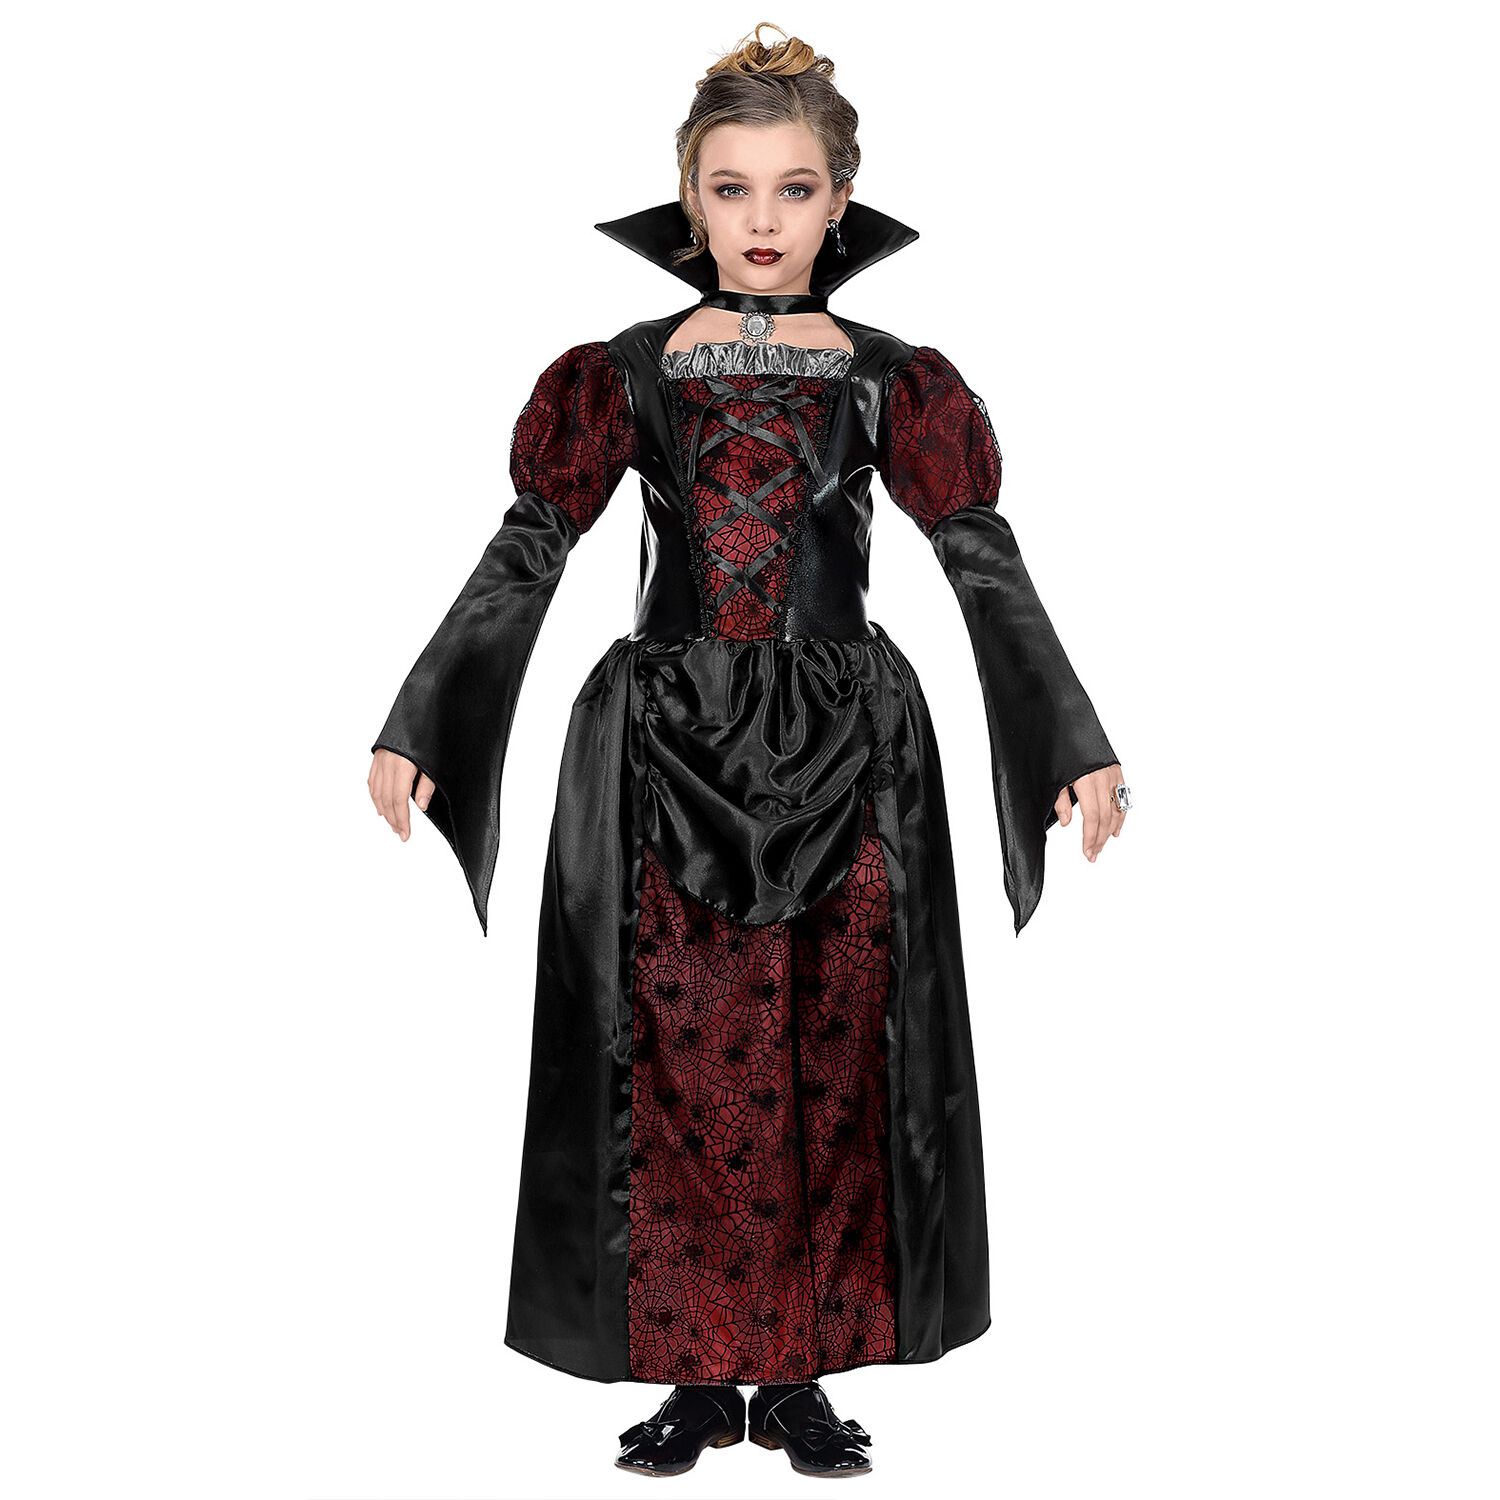 NEU Halloween-Kinderkostüm Vampirin, Schwarz-Bordeaux, Größe 116cm, Alter 4-5 Jahre